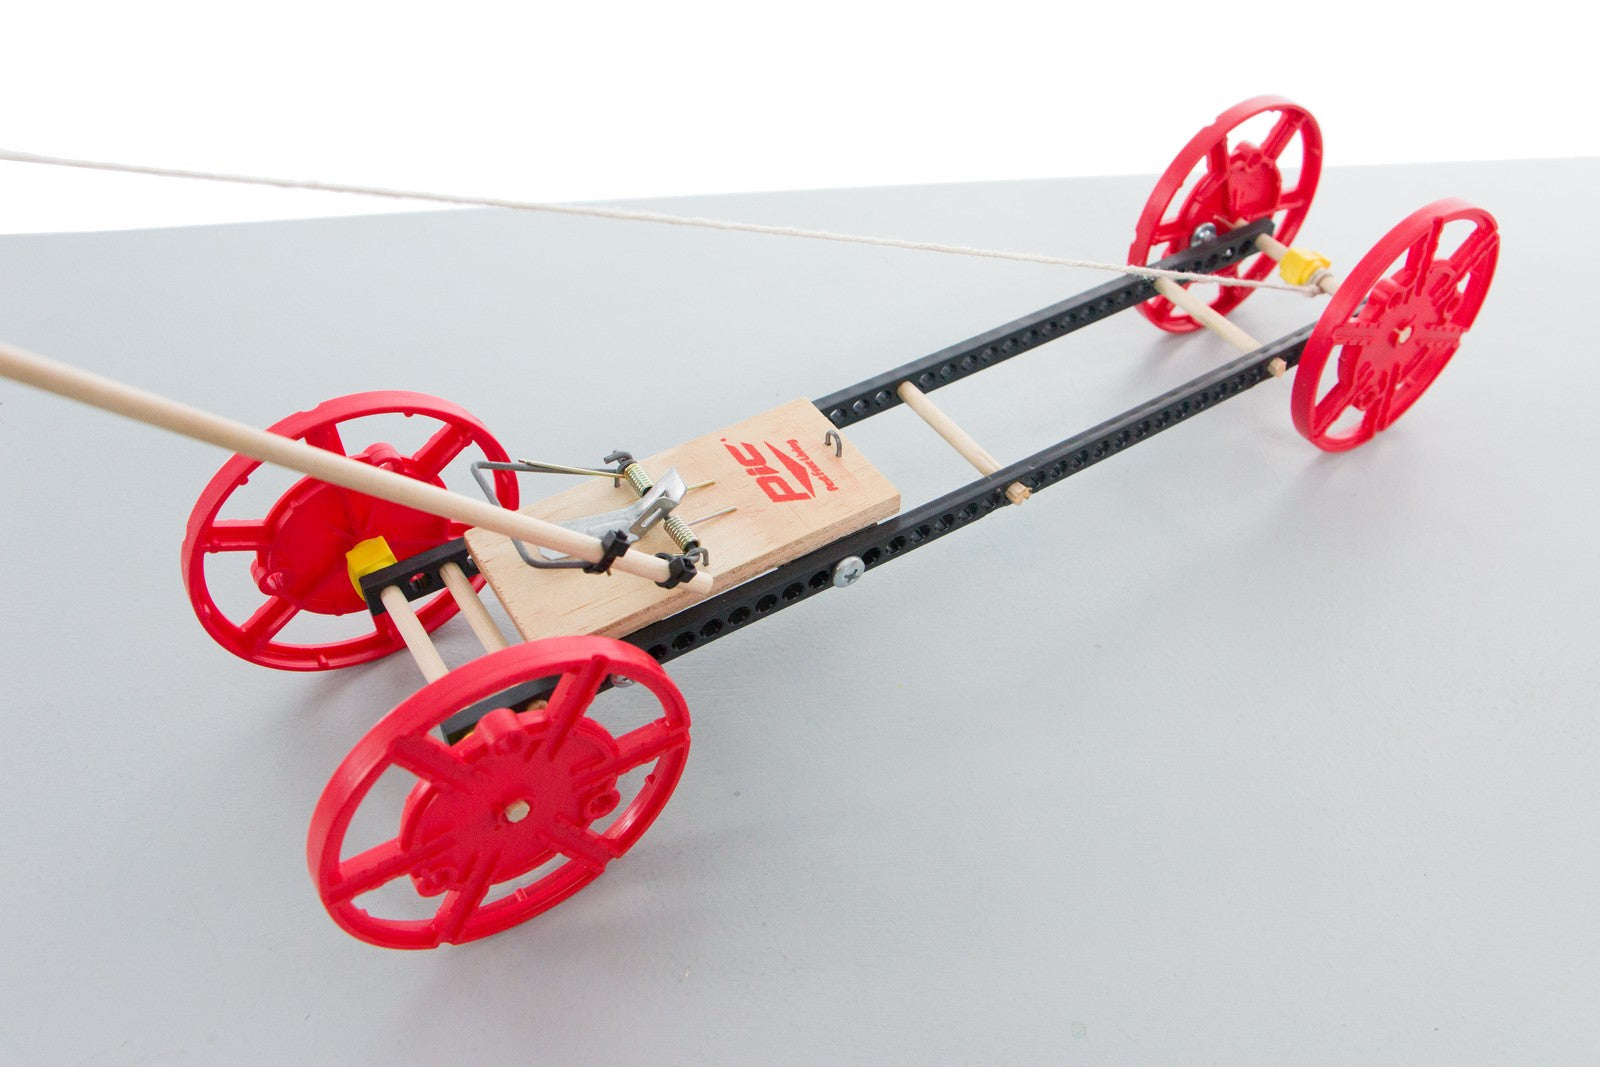 TeacherGeek Mousetrap Vehicle Activity, 1 Kit